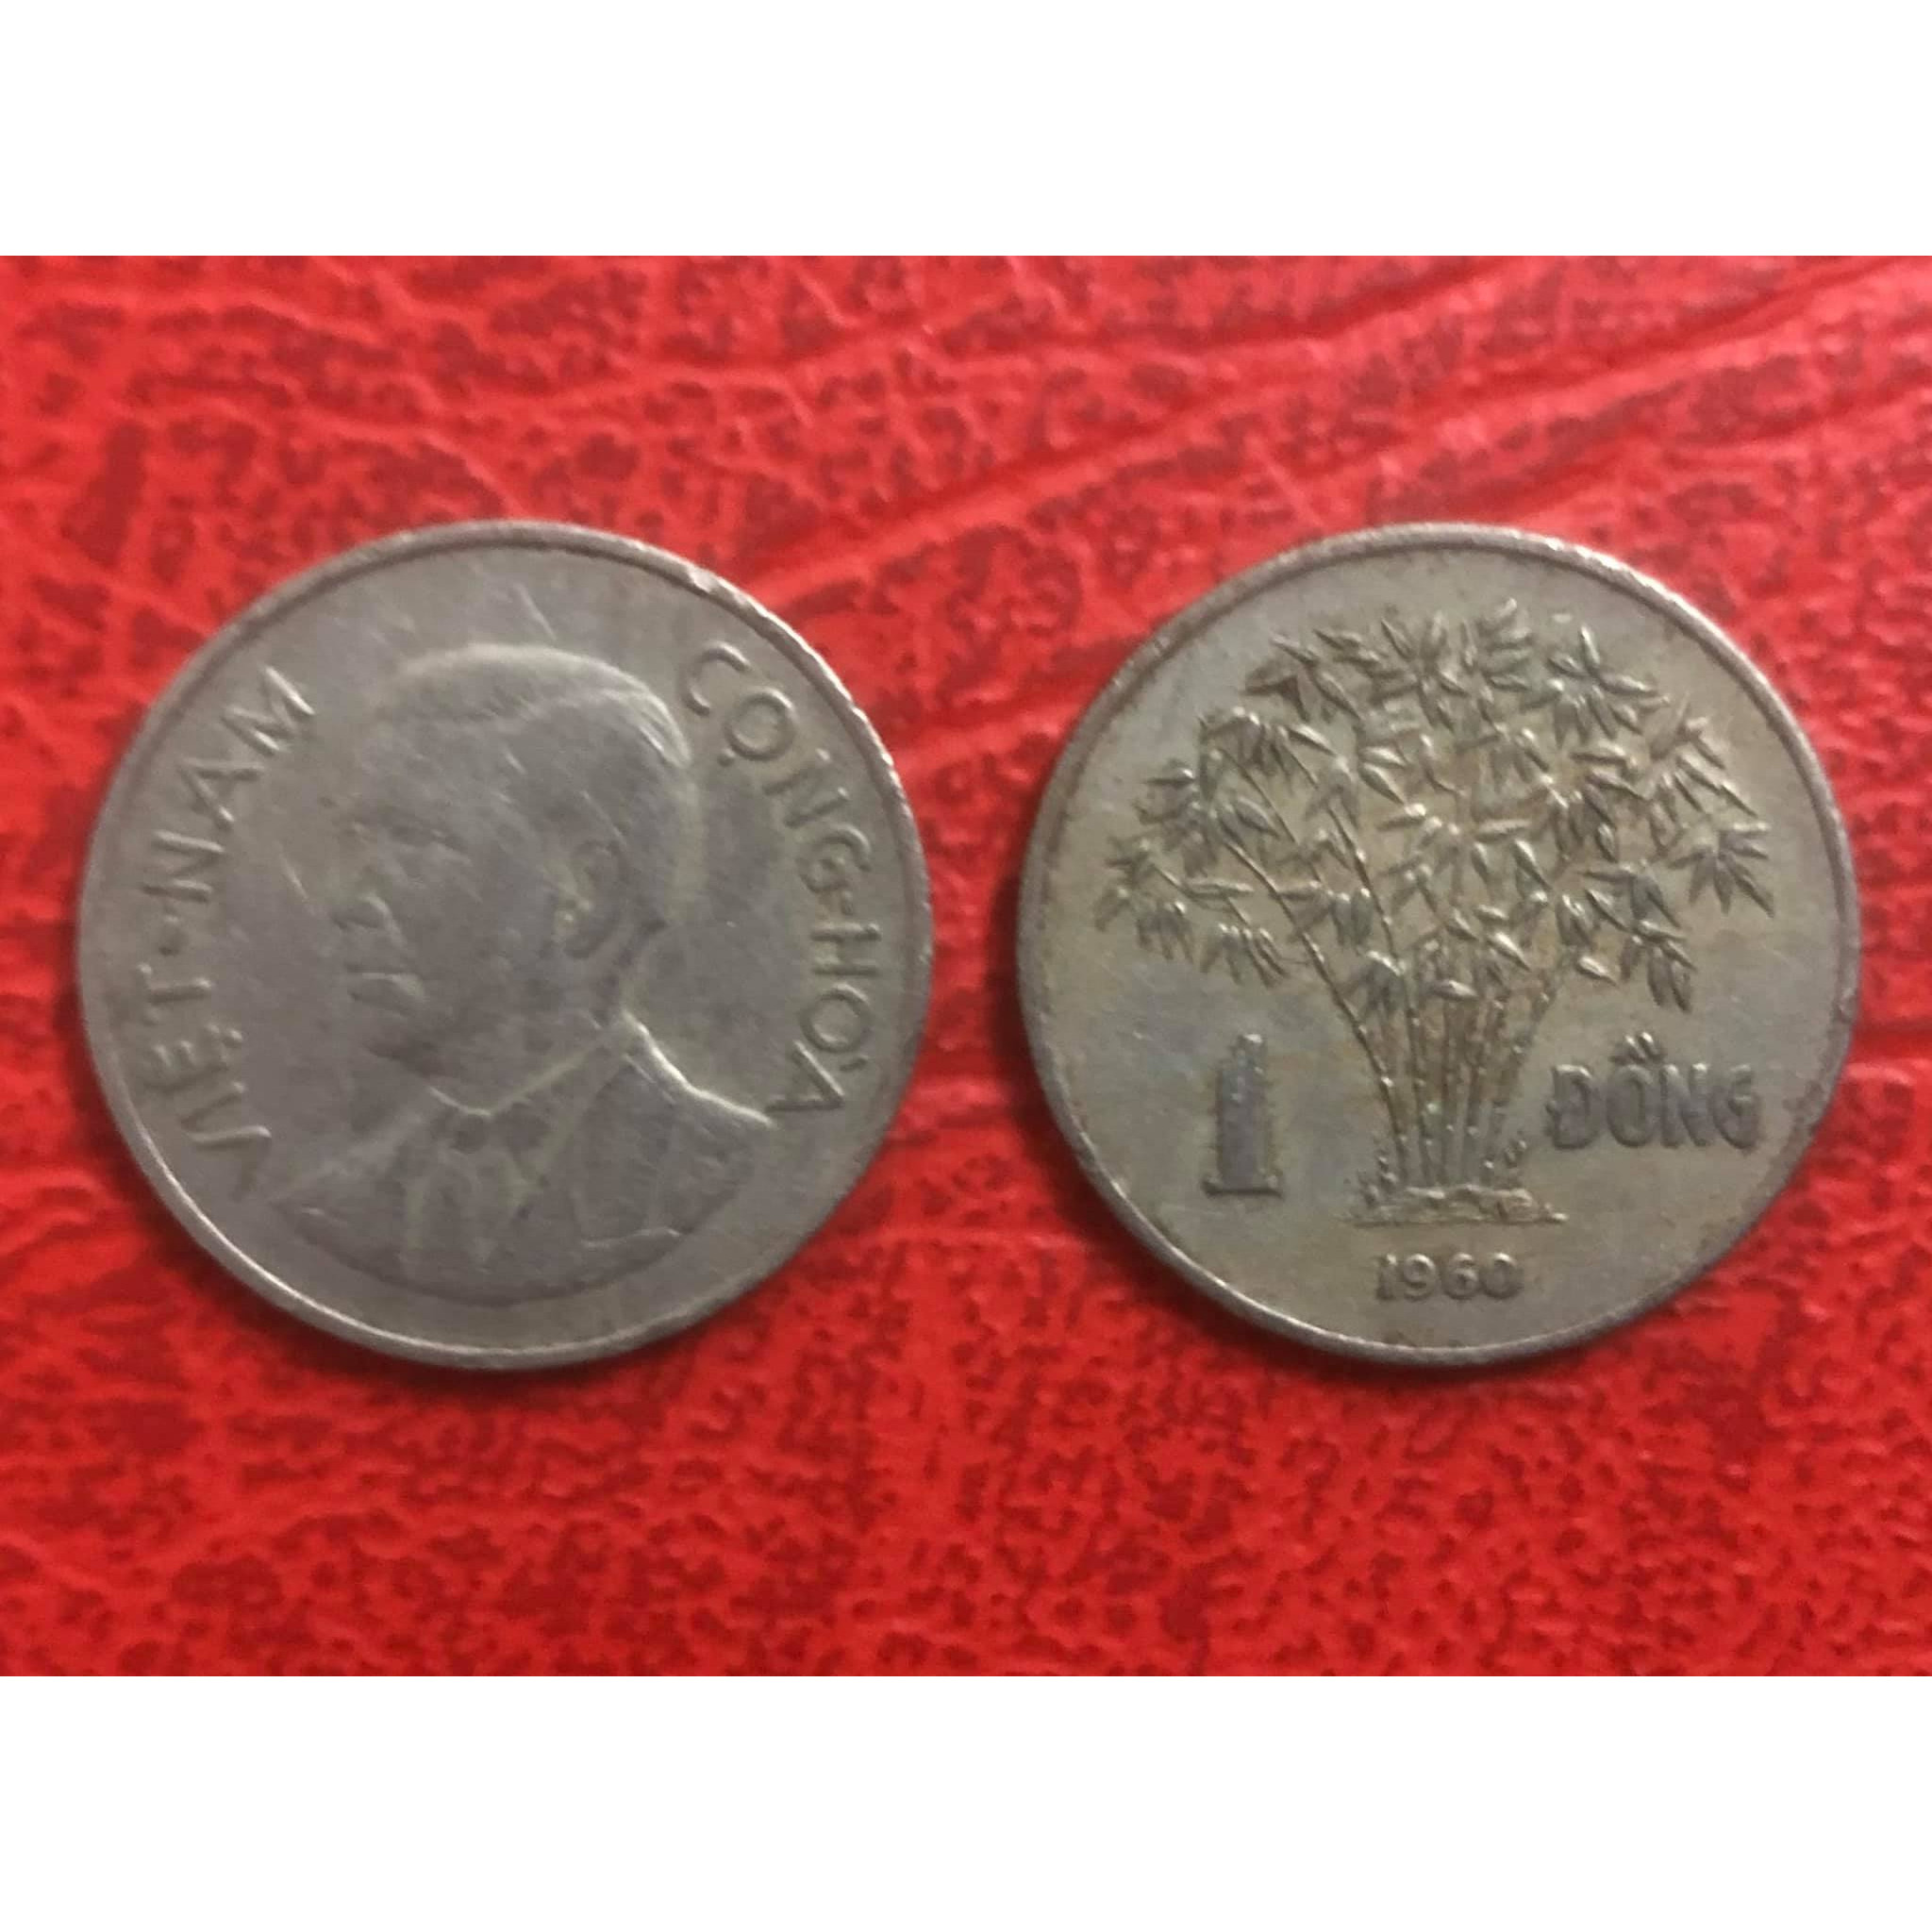 Đồng xu 1 đồng Tổng thống Ngô Đình Diệm - Bụi trúc, xu Việt Nam xưa sưu tầm